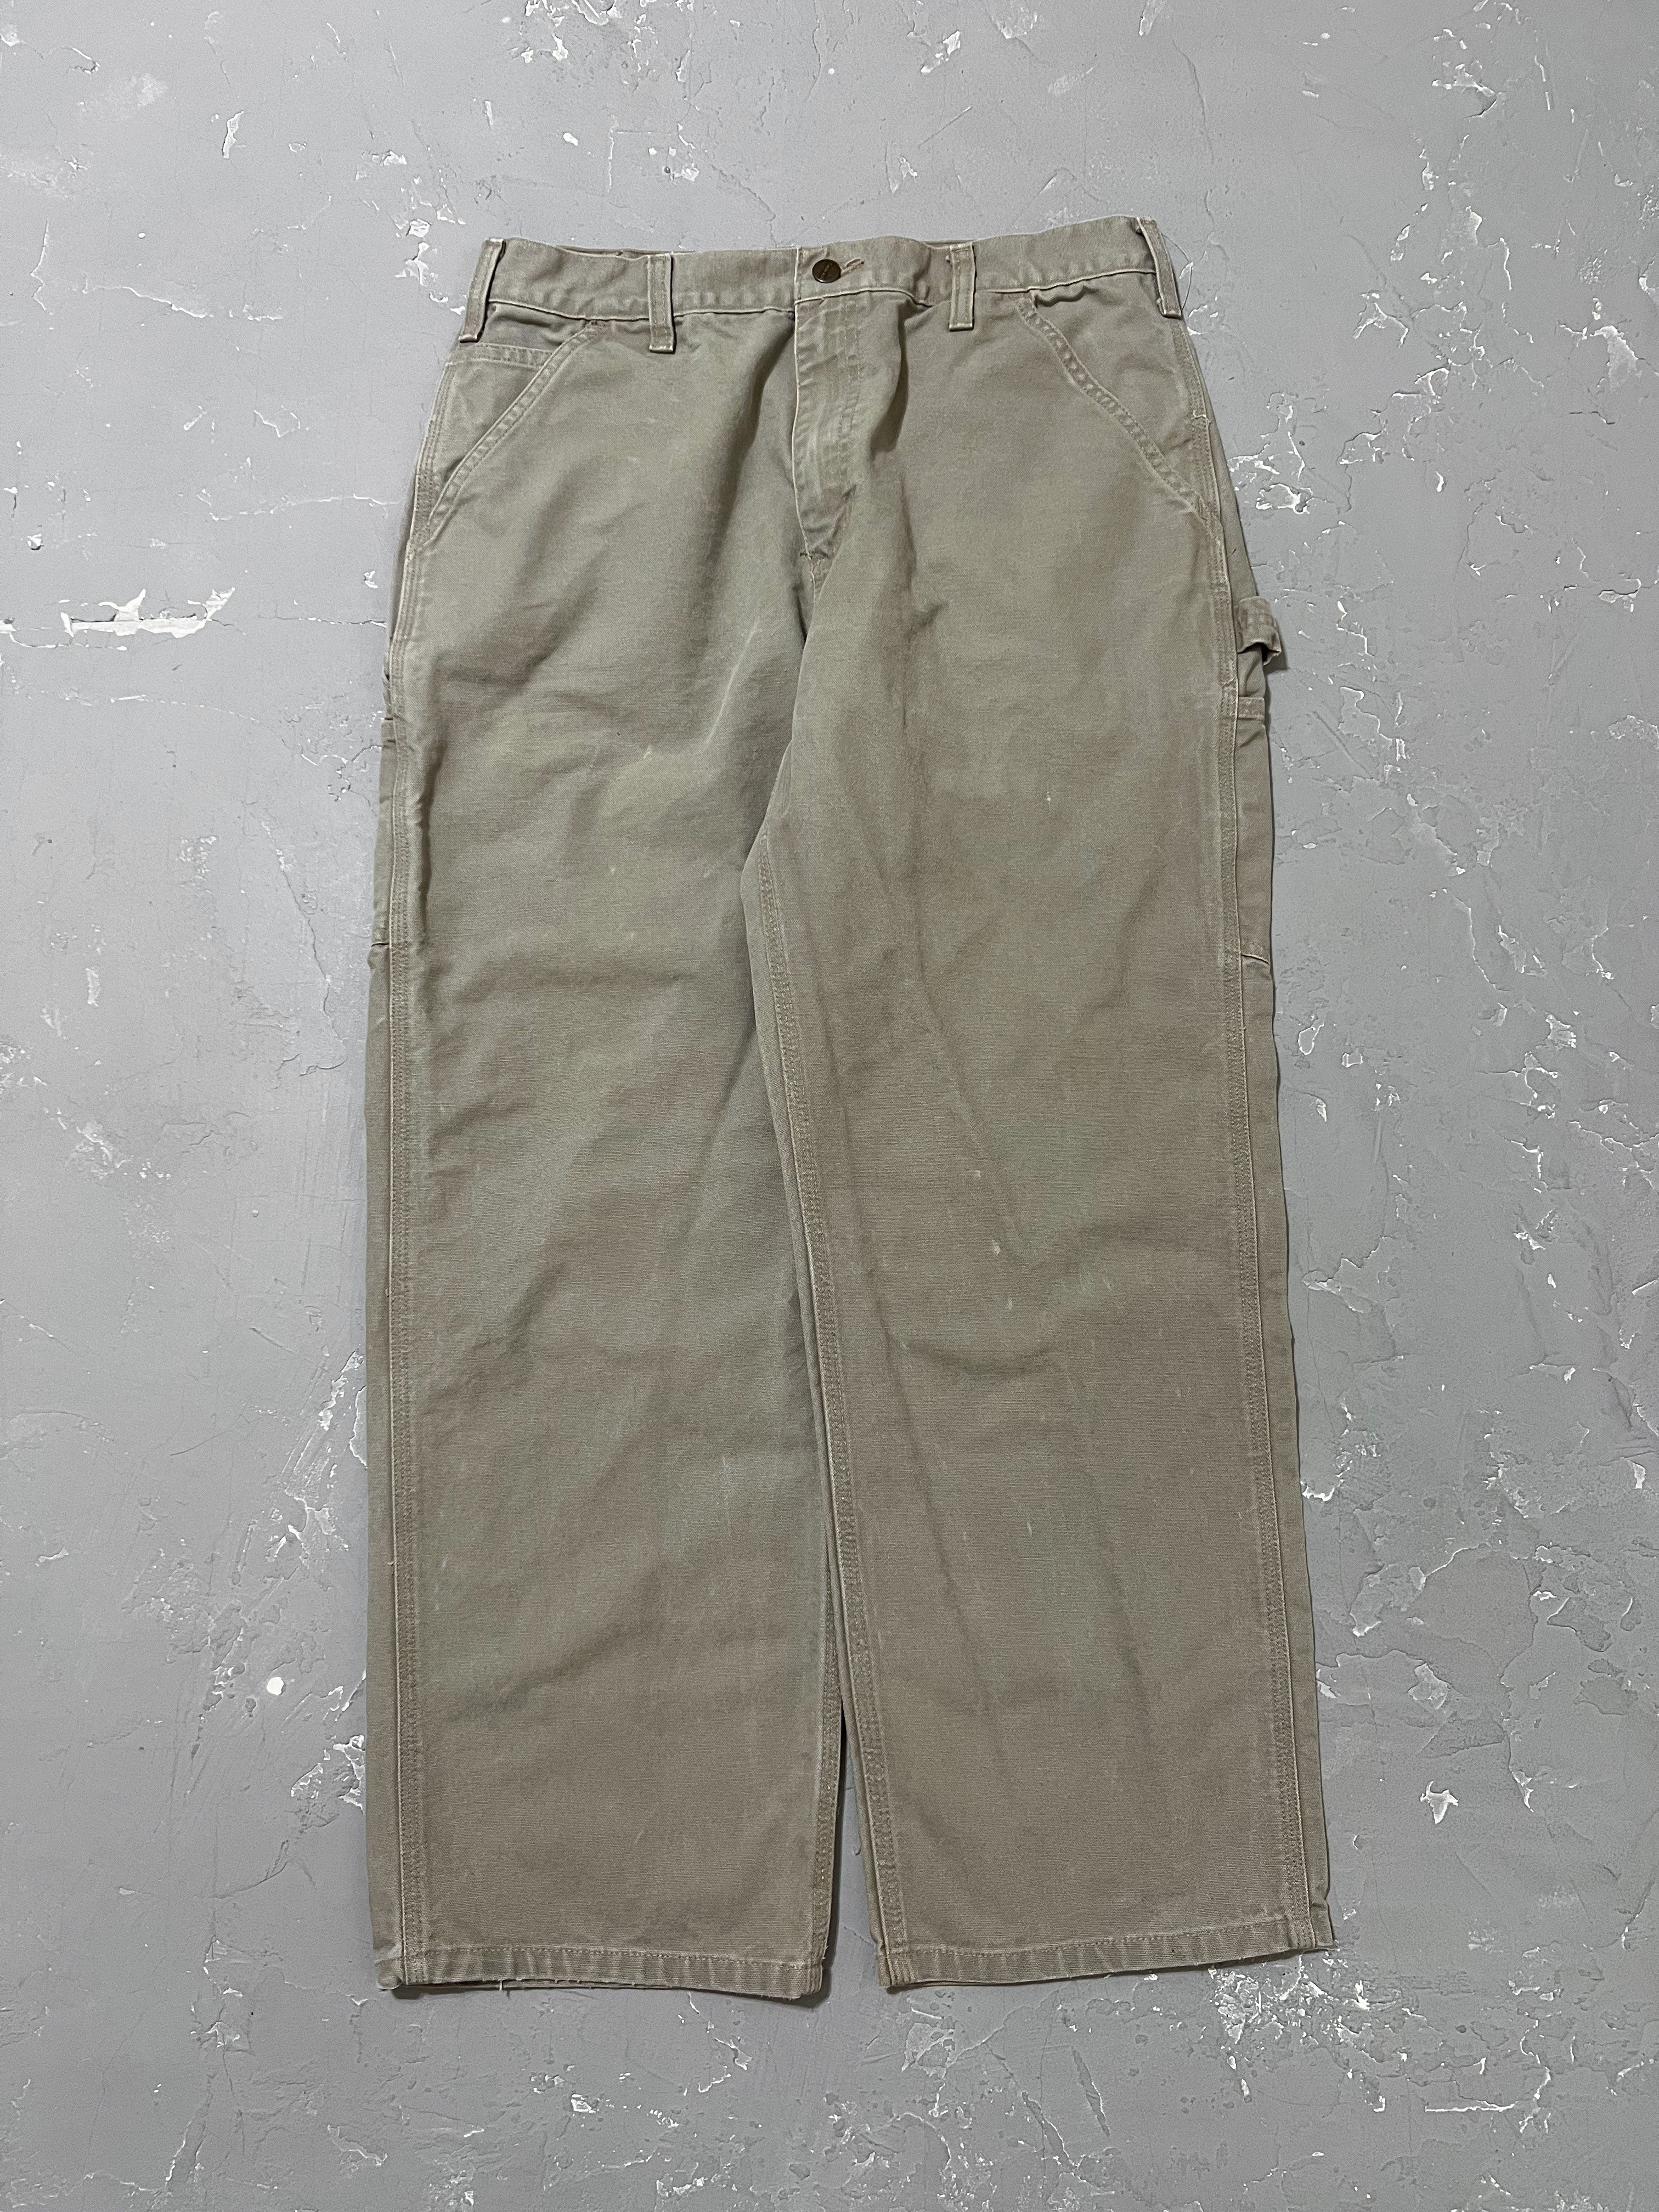 Carhartt Sand Carpenter Pants [33 x 30]